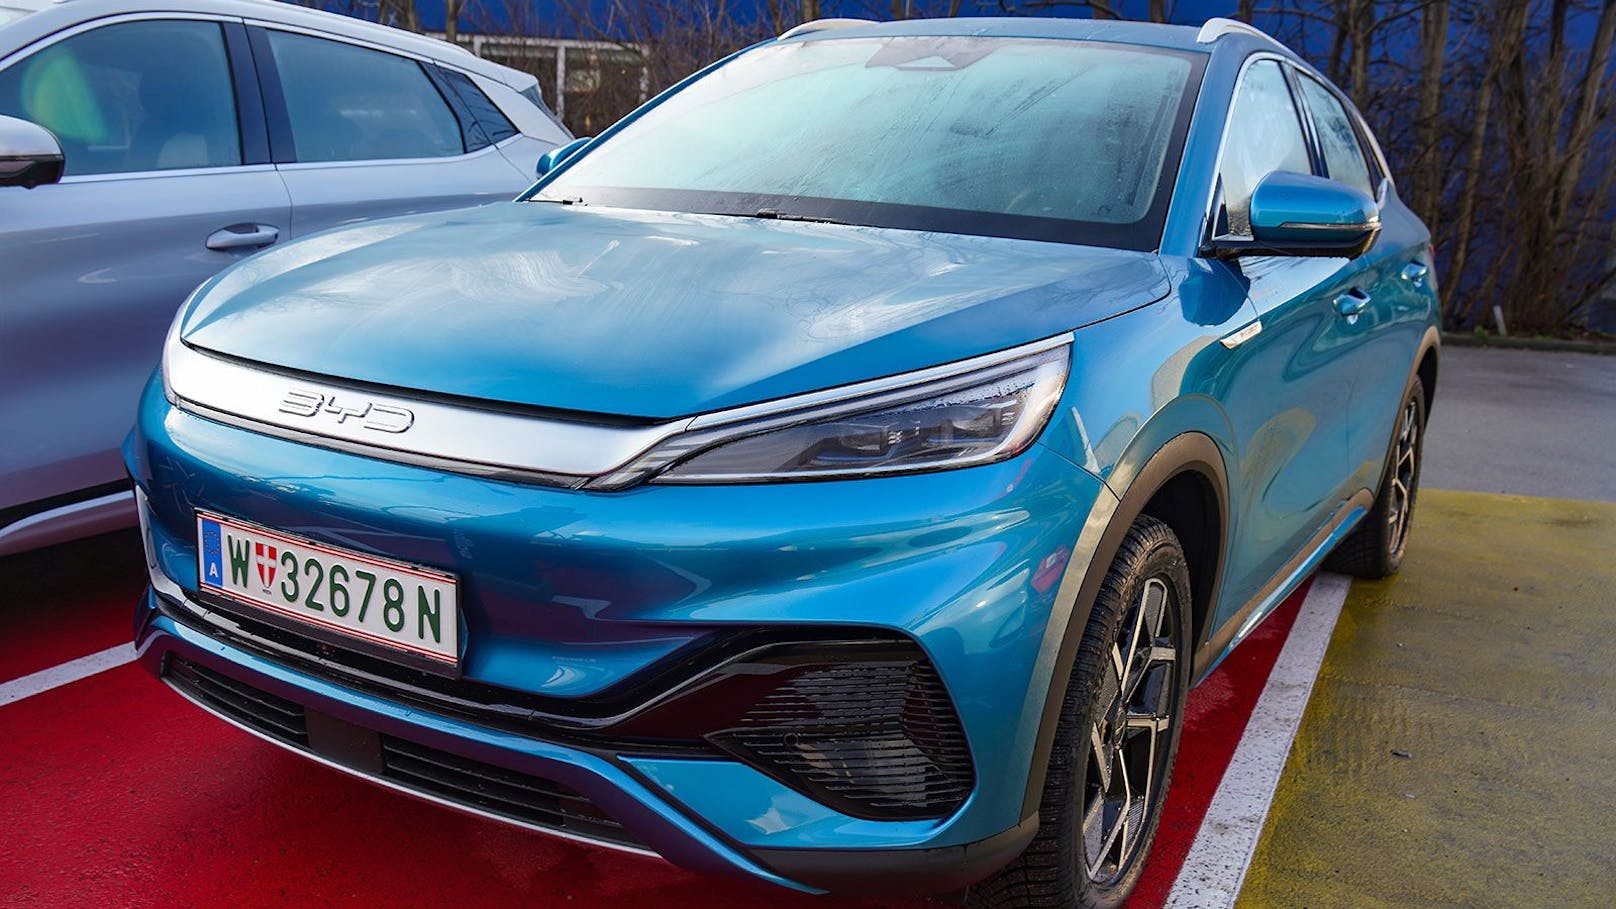 Der ATTO 3 ist das Einstiegsmodell von BYD in Österreich – und gehört auch zu den E-Autos des chinesischen Herstellers, die sich in der Ausschreibung durchsetzten.